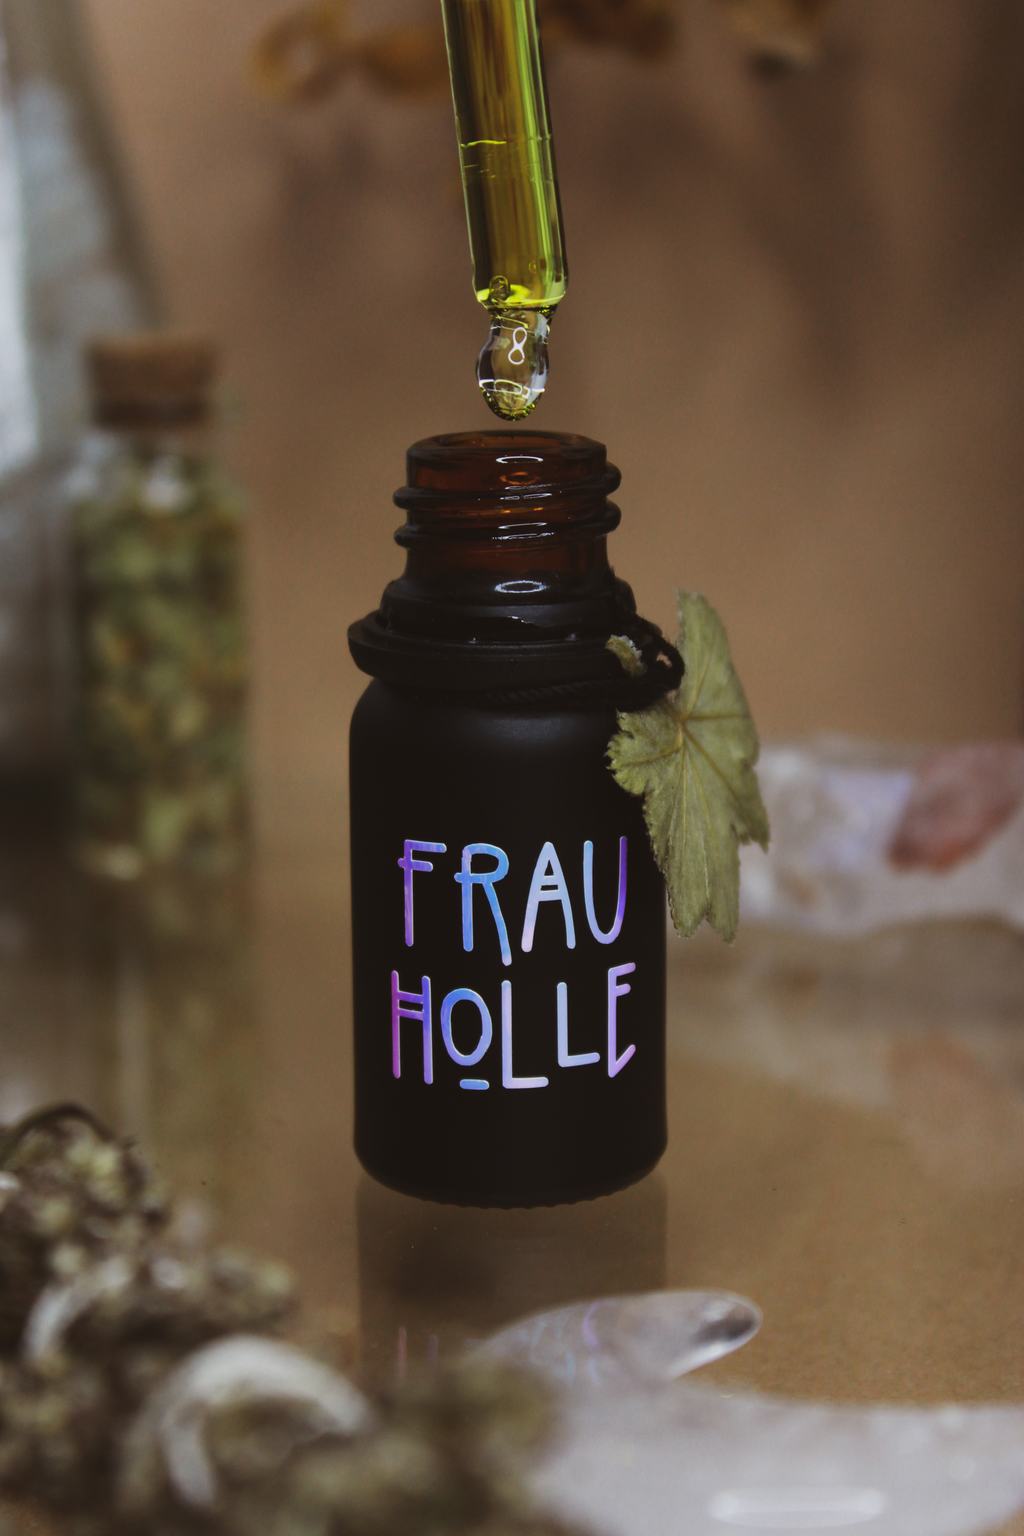 Eine mattschwarze Pipettenflasche mit der Aufschrift "Frau Holle". Als Anhänger ist ein Blatt Frauenmantel an der Flasche zu finden.